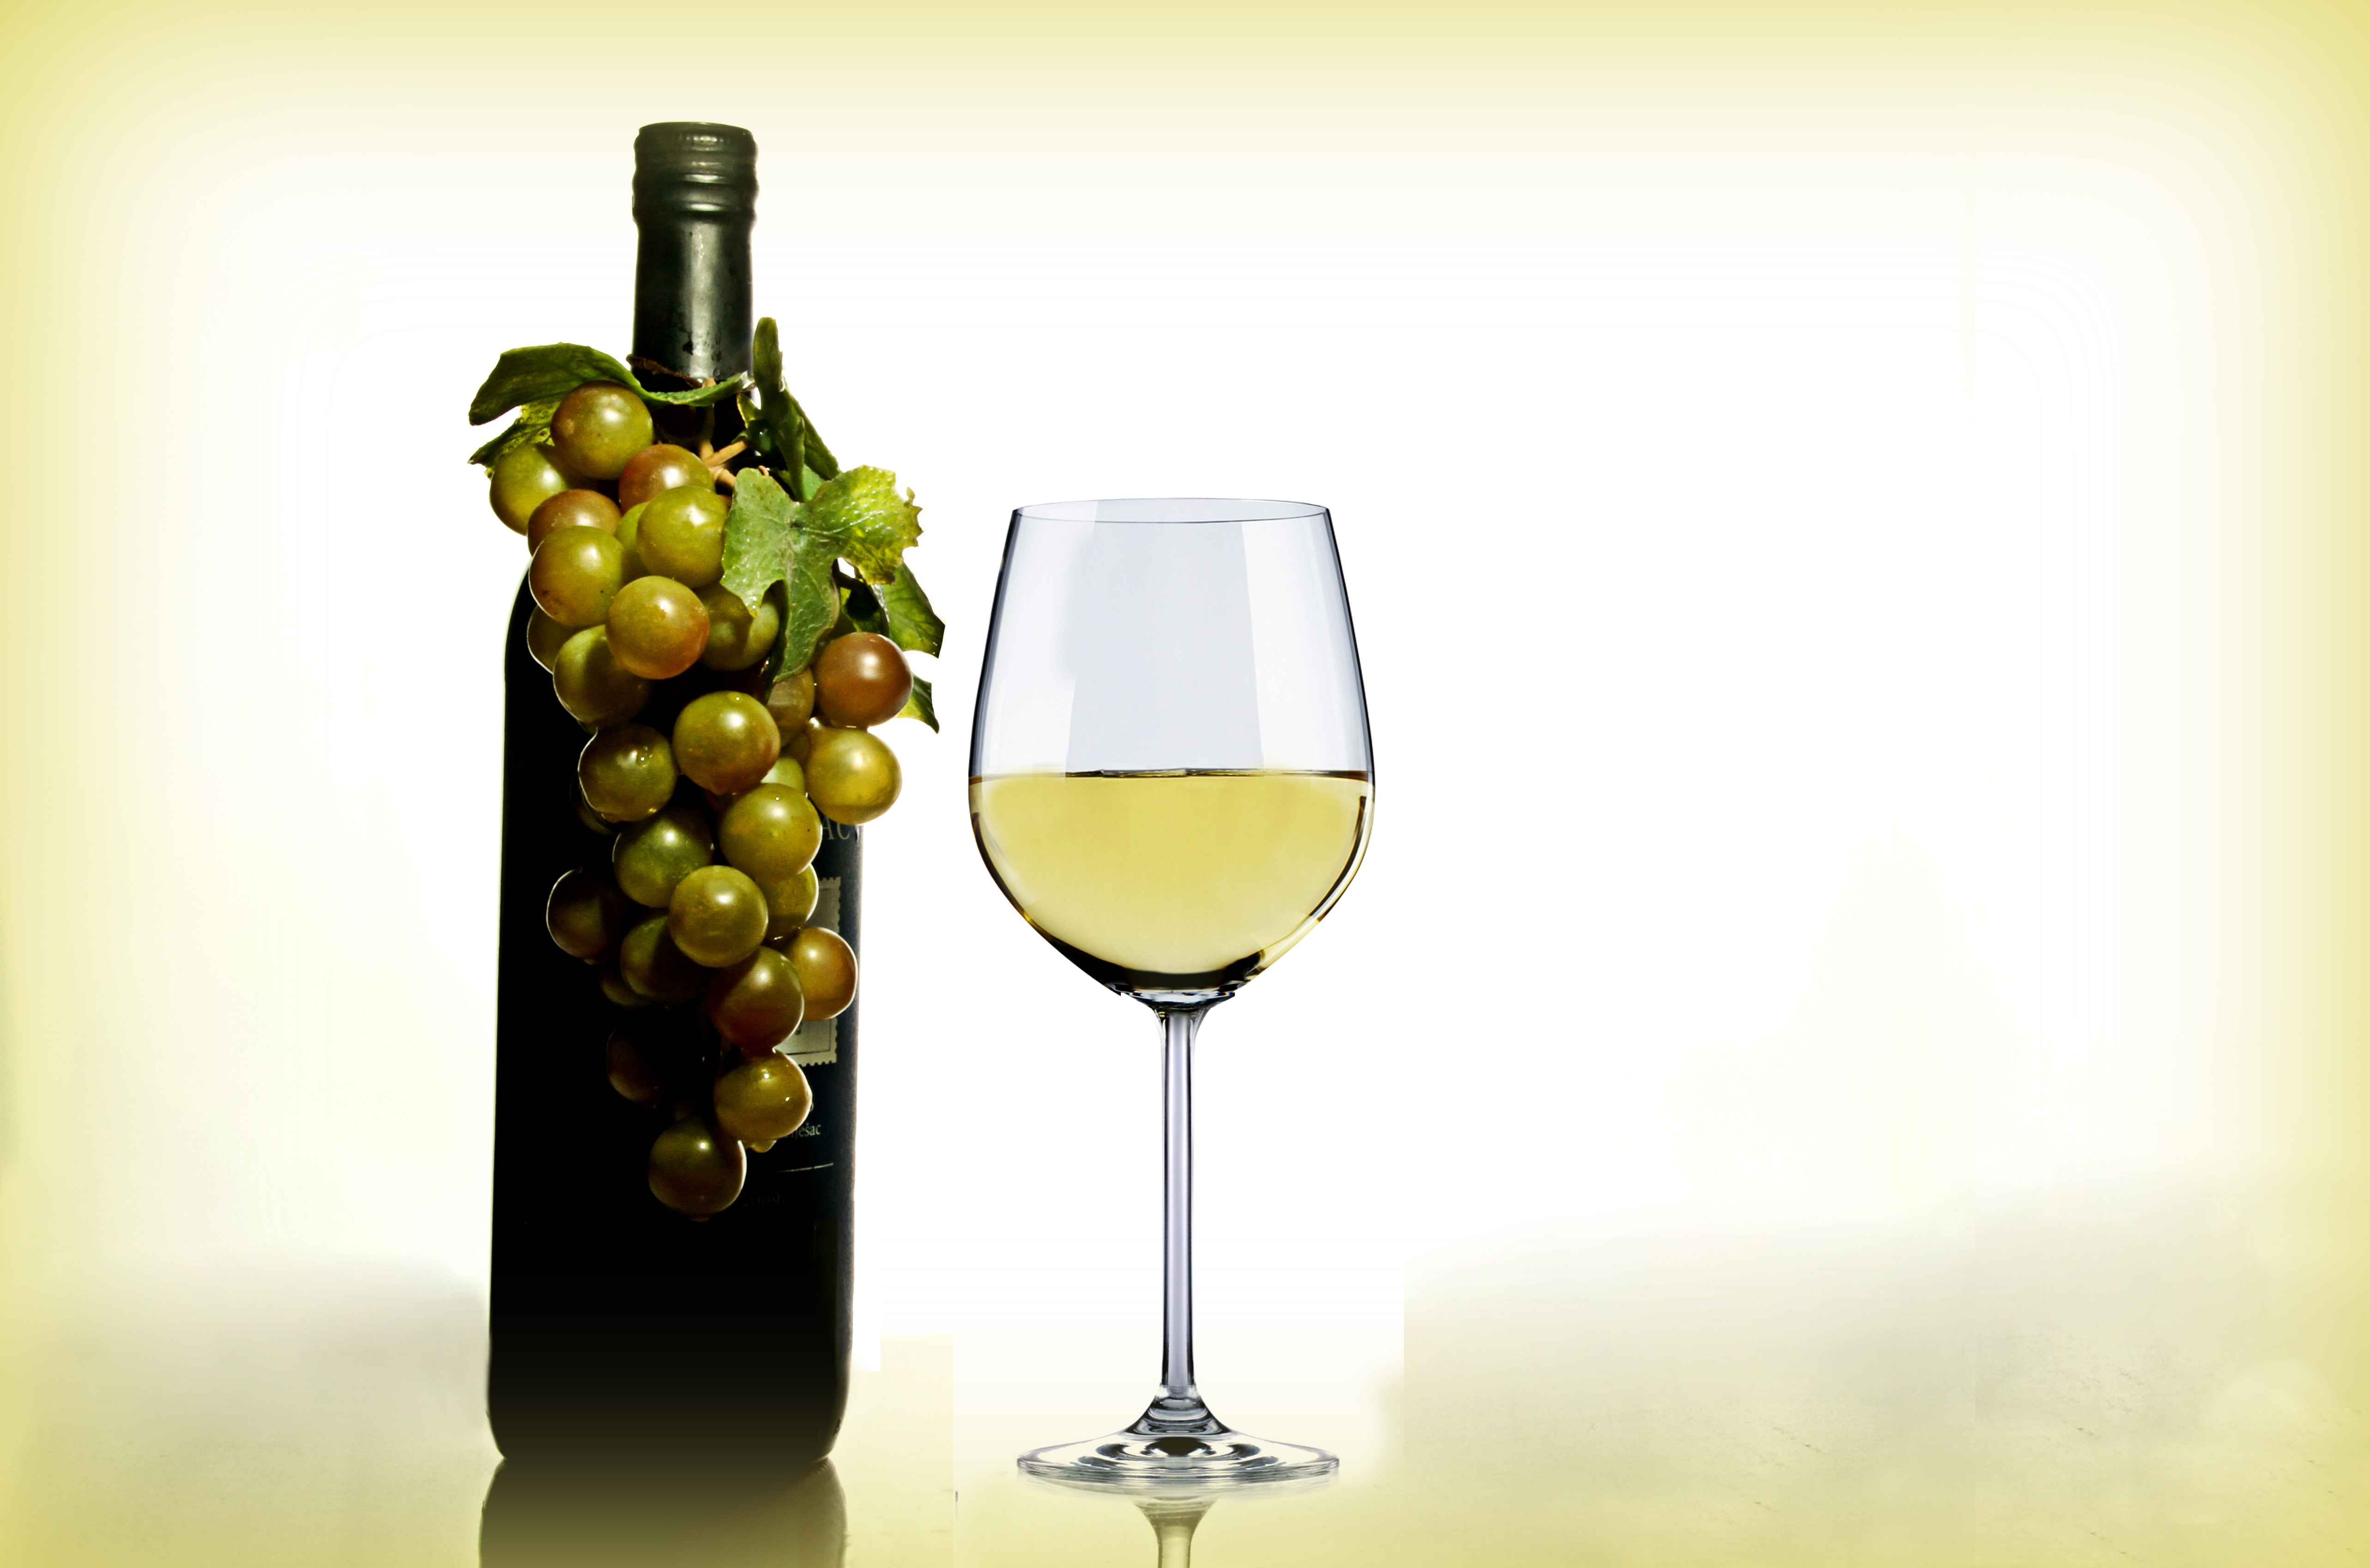 Бесплатное фото Бутылка белого вина с бокалом